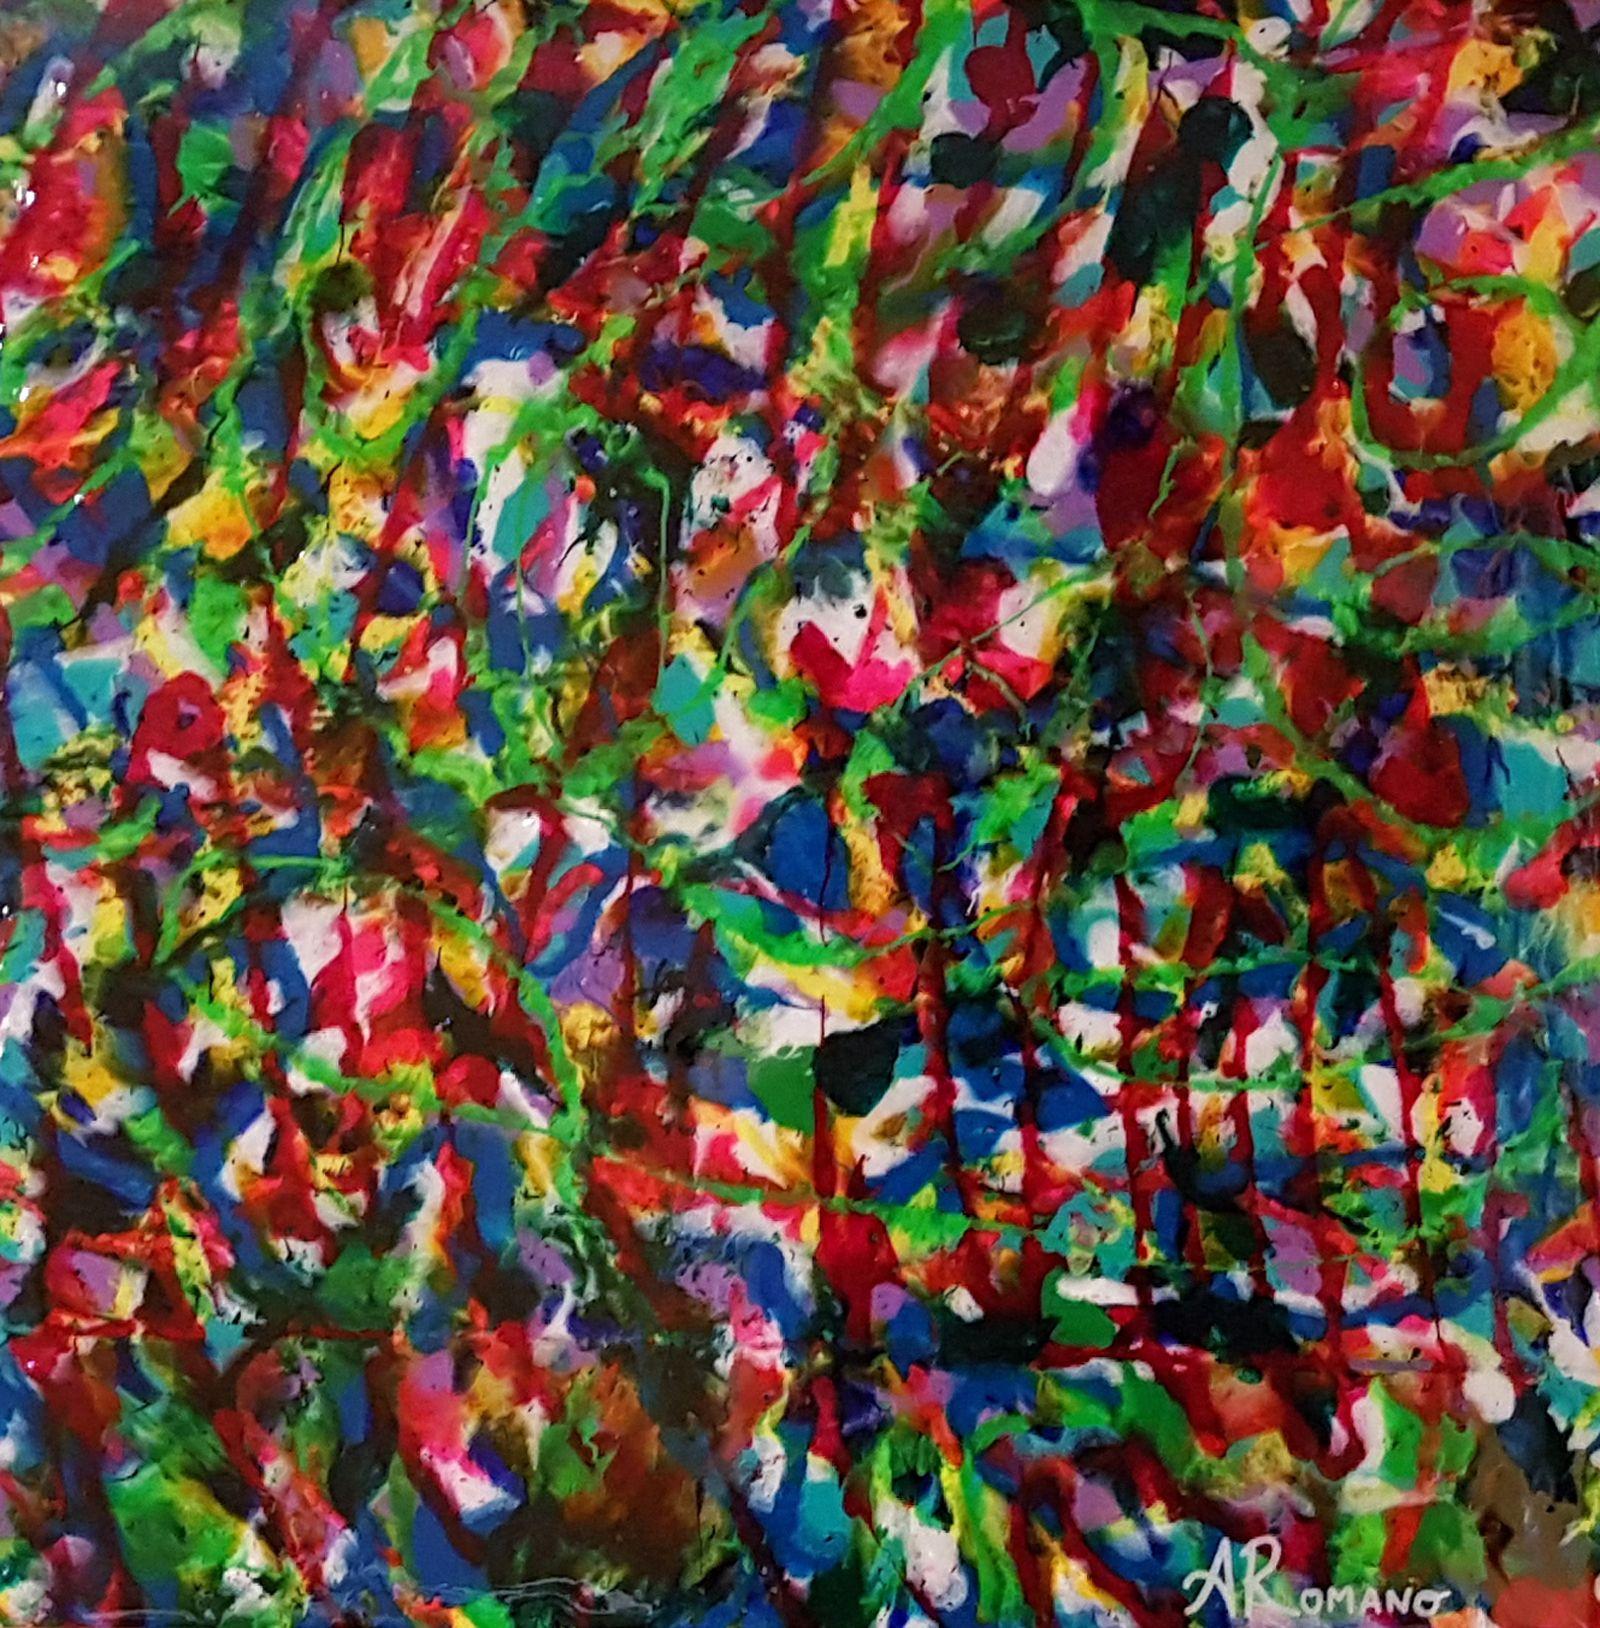 Colourful Consciousness, Mixed Media on Wood Panel - Mixed Media Art by Alexandra Romano